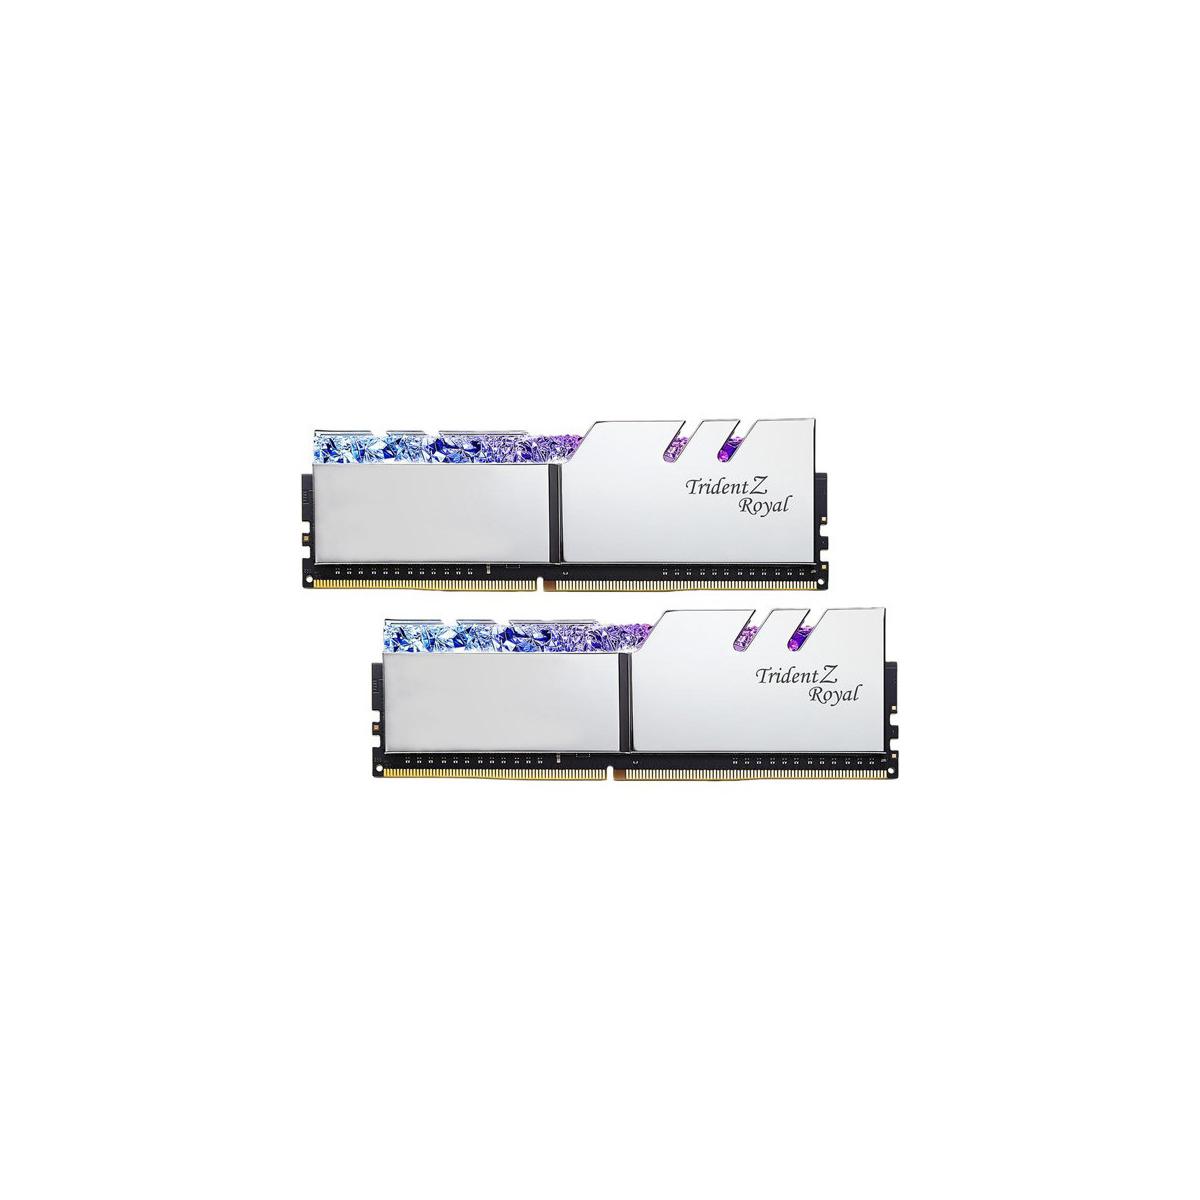 MEMORIA DIMM DDR4 G.SKILL (F4-3600C18D-32GTRS) 32GB (2X16GB) 3600 MHZ, TRIDENT ROYAL SILVER - F4-3600C18D-32GTRS